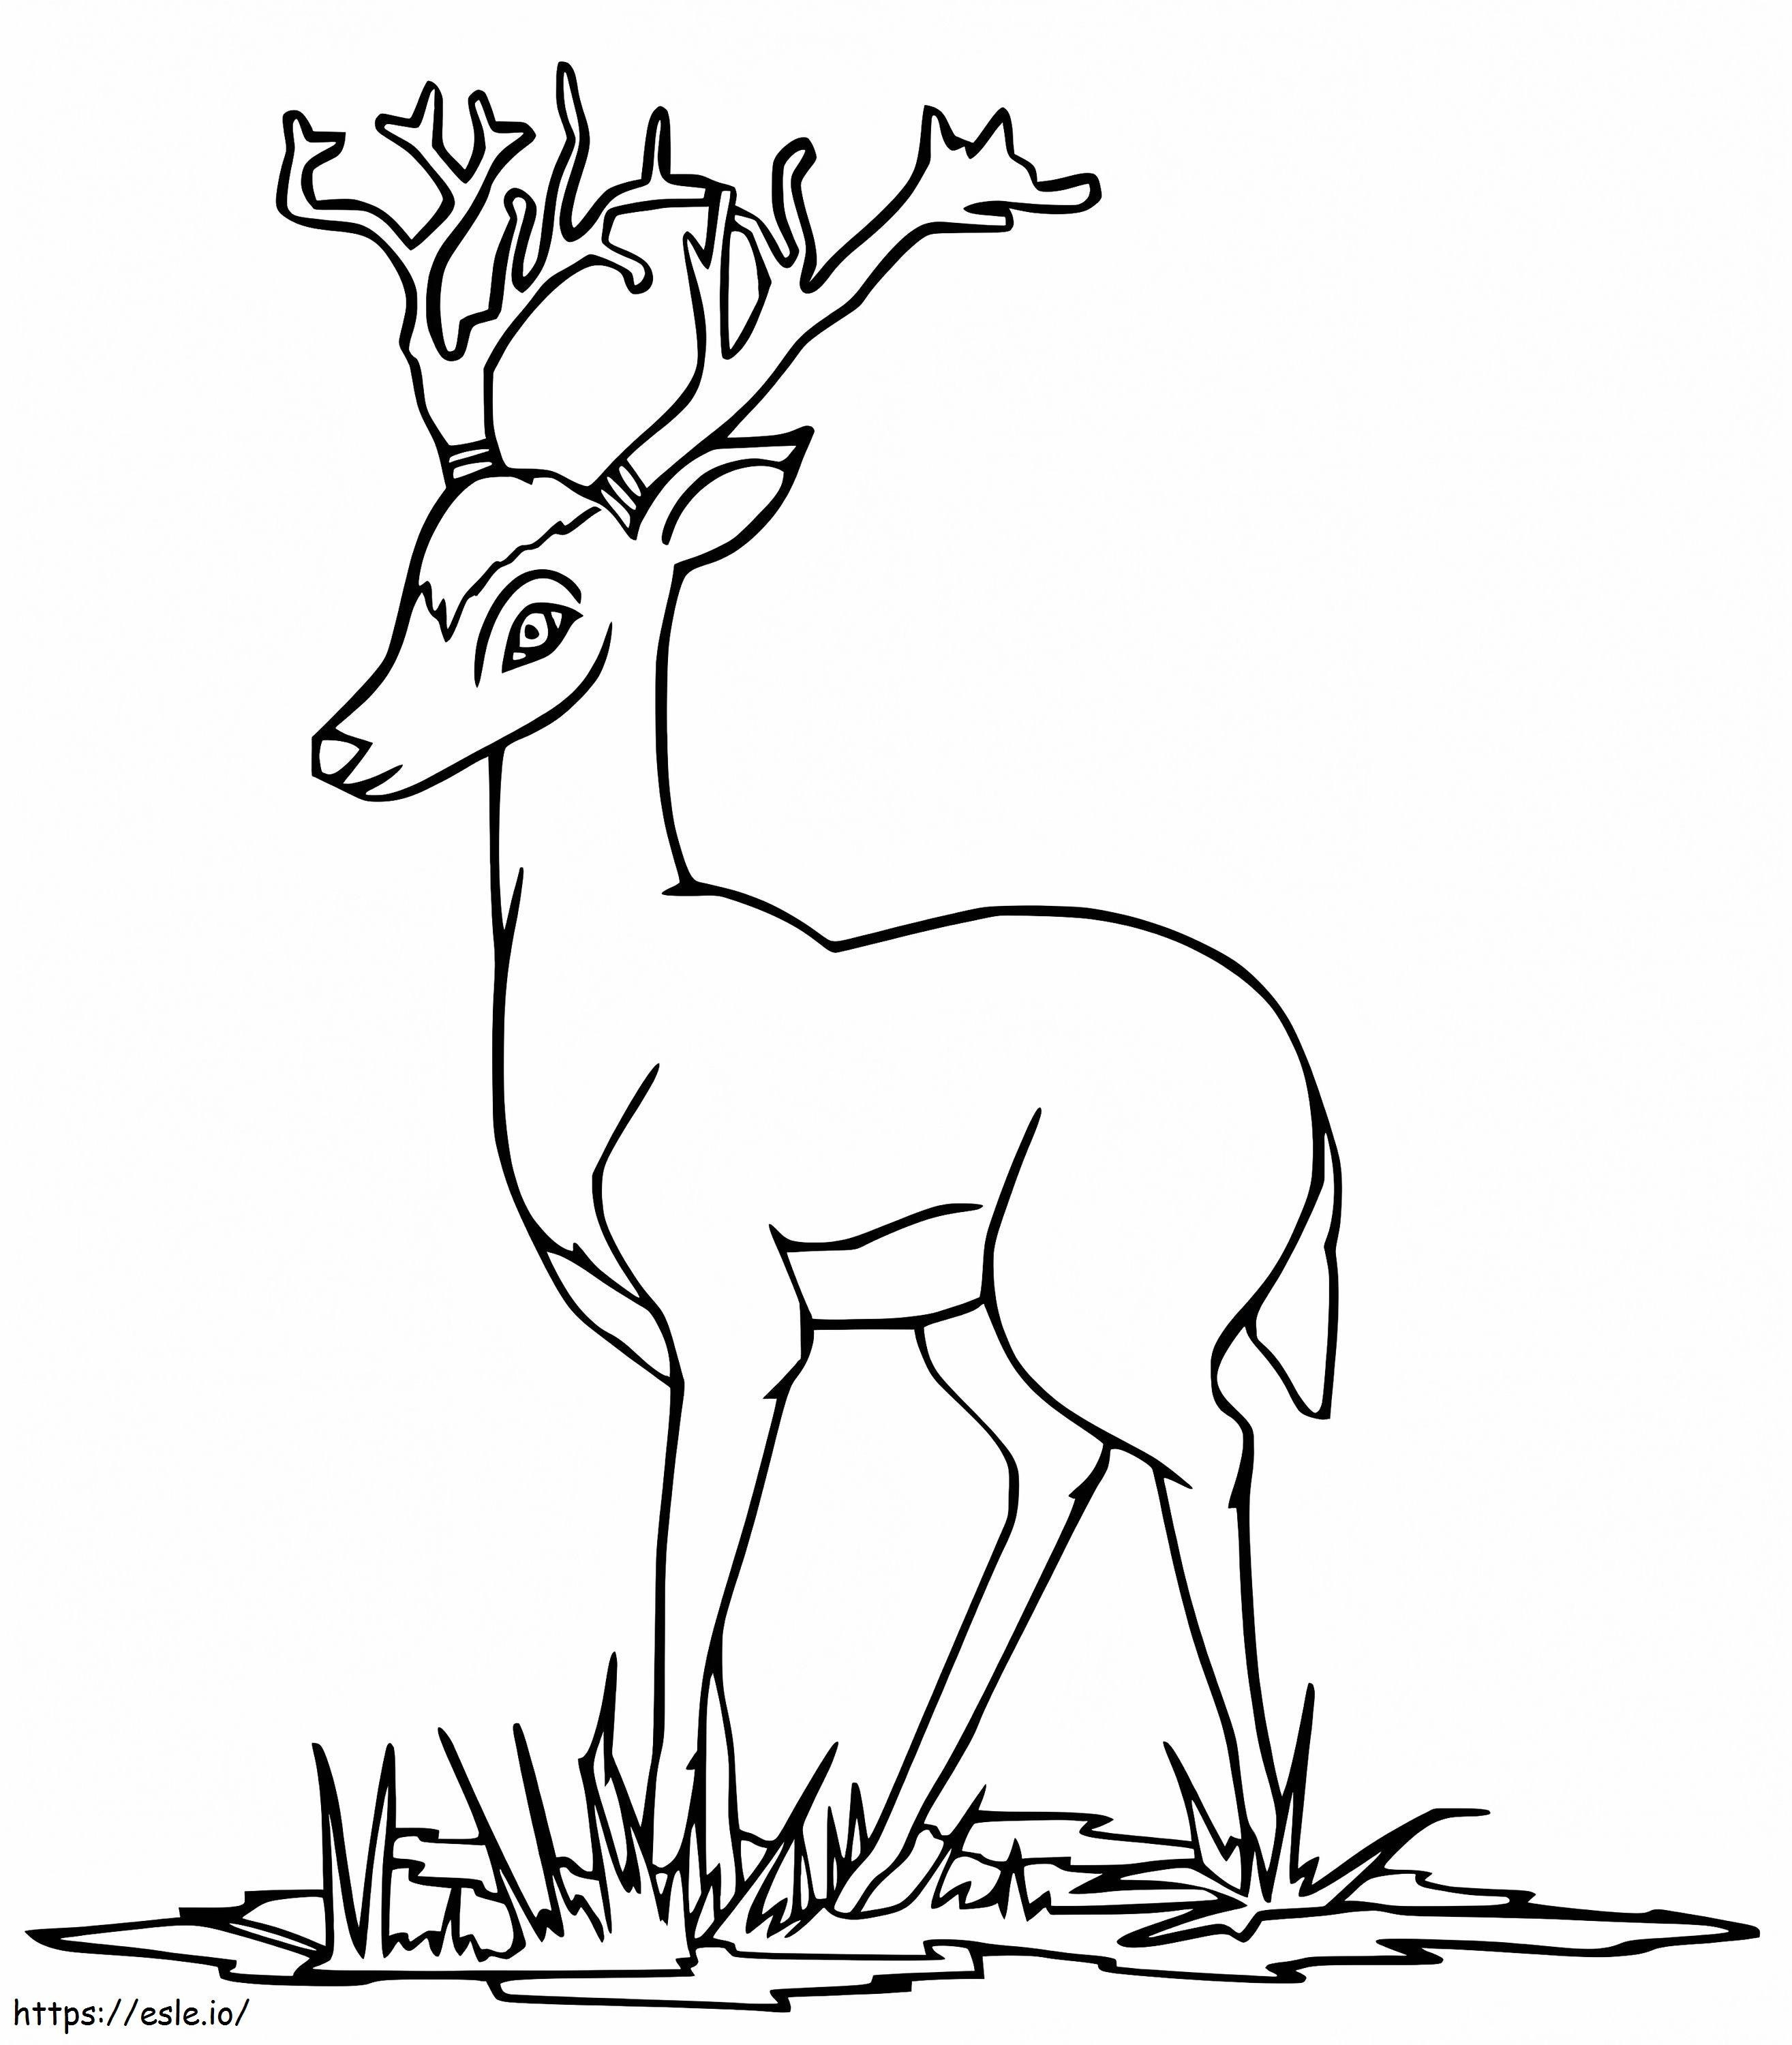 Cartoon Red Deer coloring page